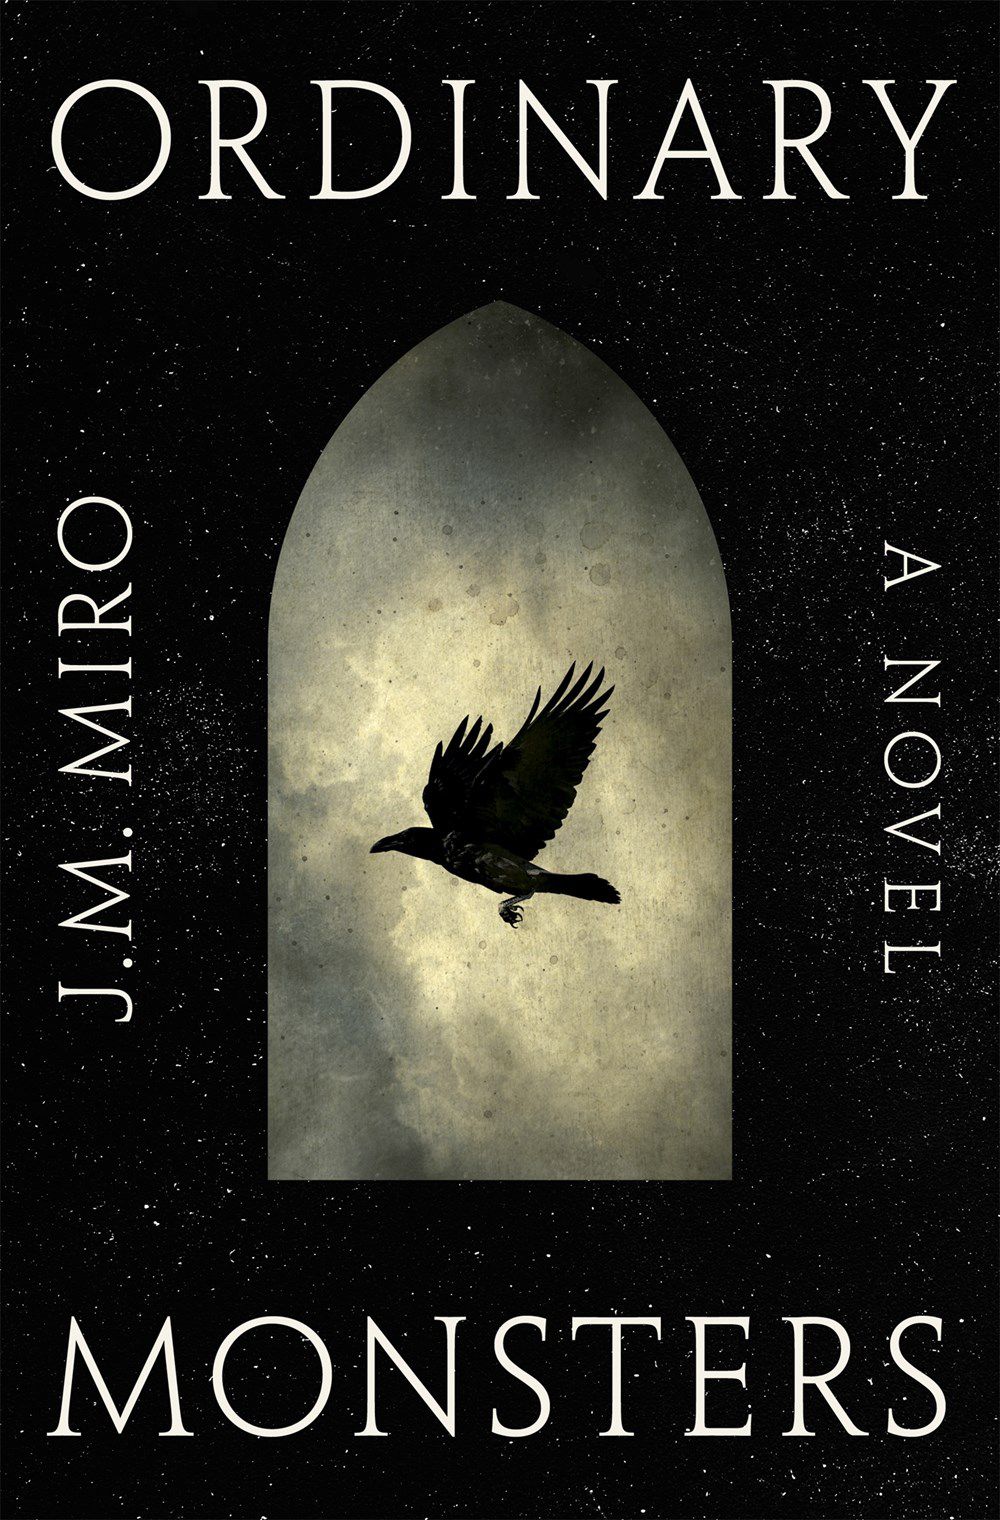 Immagine di copertina di Ordinary Monsters di JM Miro, con un uccello nero che vola sullo sfondo di nuvole e cielo notturno.